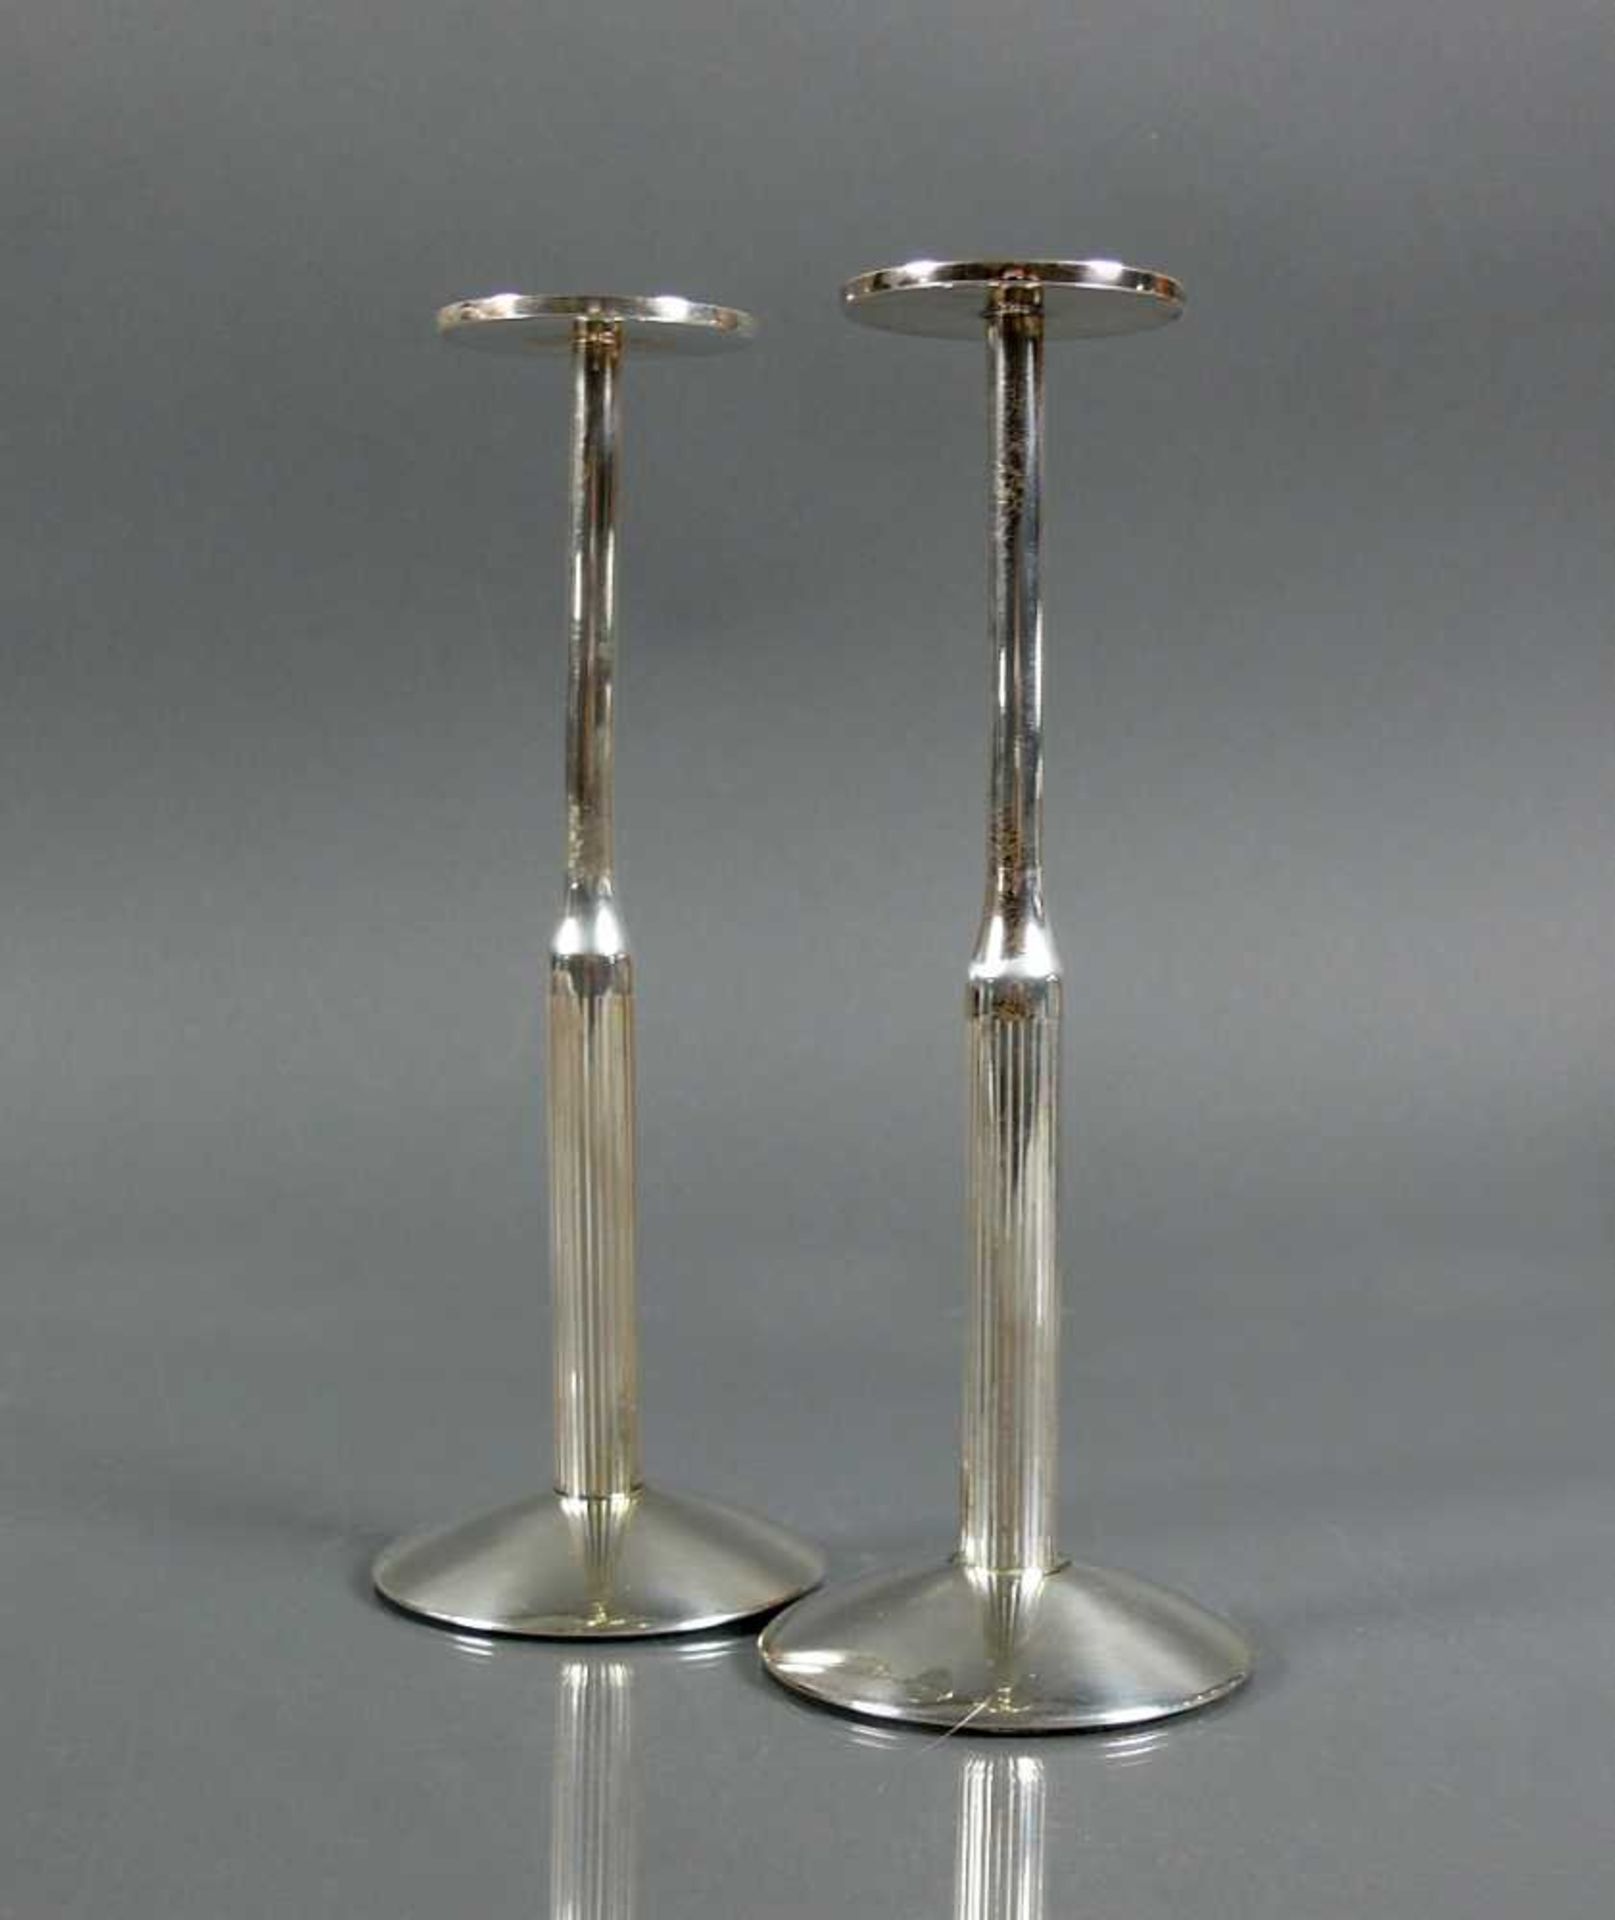 Paar Kerzenleuchter Deutsch, Silber 925 WTB; flacher Fuß mit gestrecktem Korpus; untere Hälfte